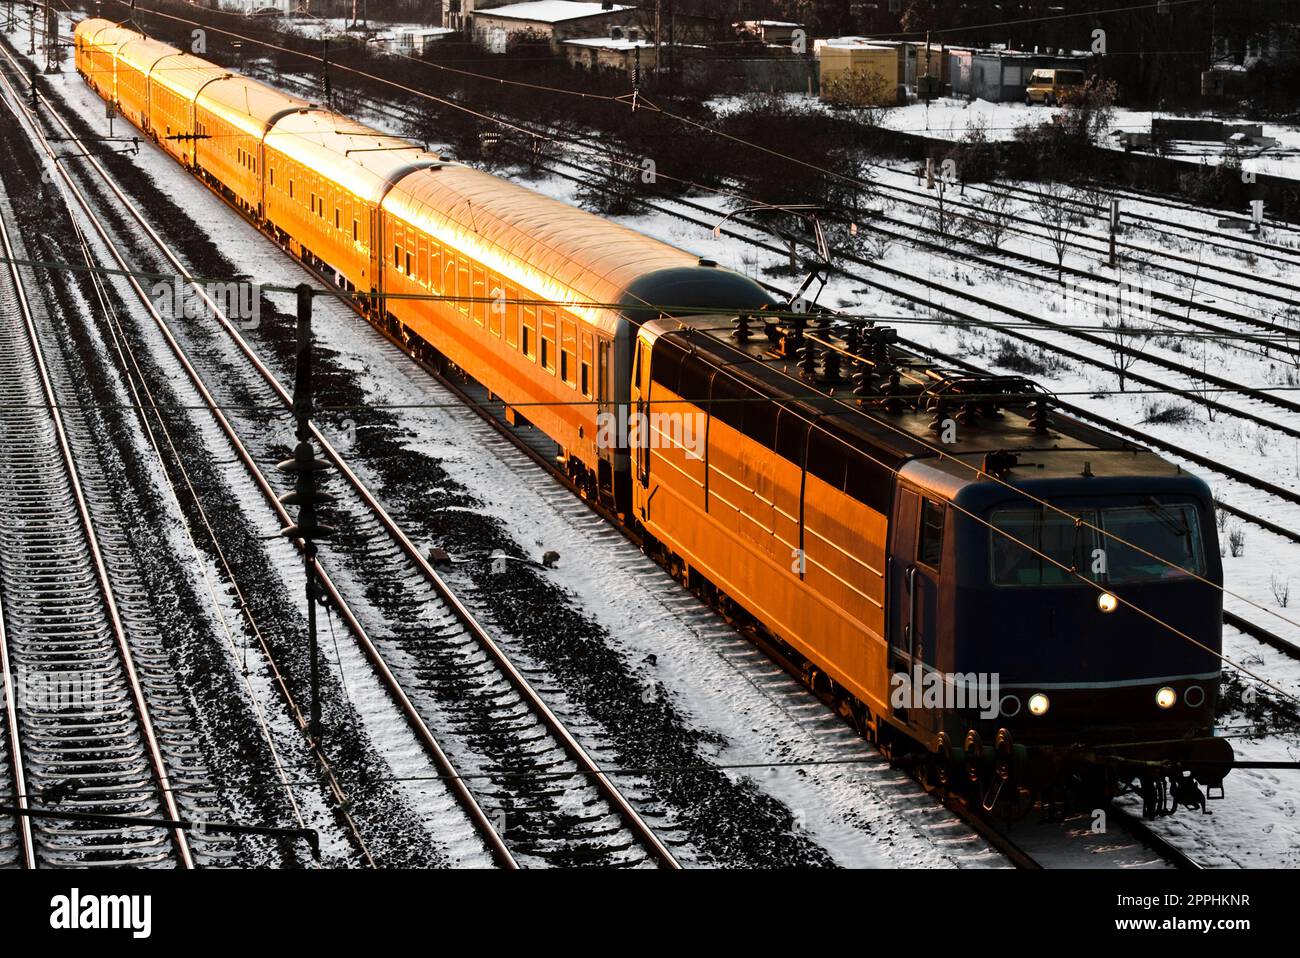 Die Lokomotive und die Kutschen eines Personenzugs bewegen sich diagonal durch das Bild, das durch die untergehende oder aufgehende Sonne orange beleuchtet wird. Stockfoto